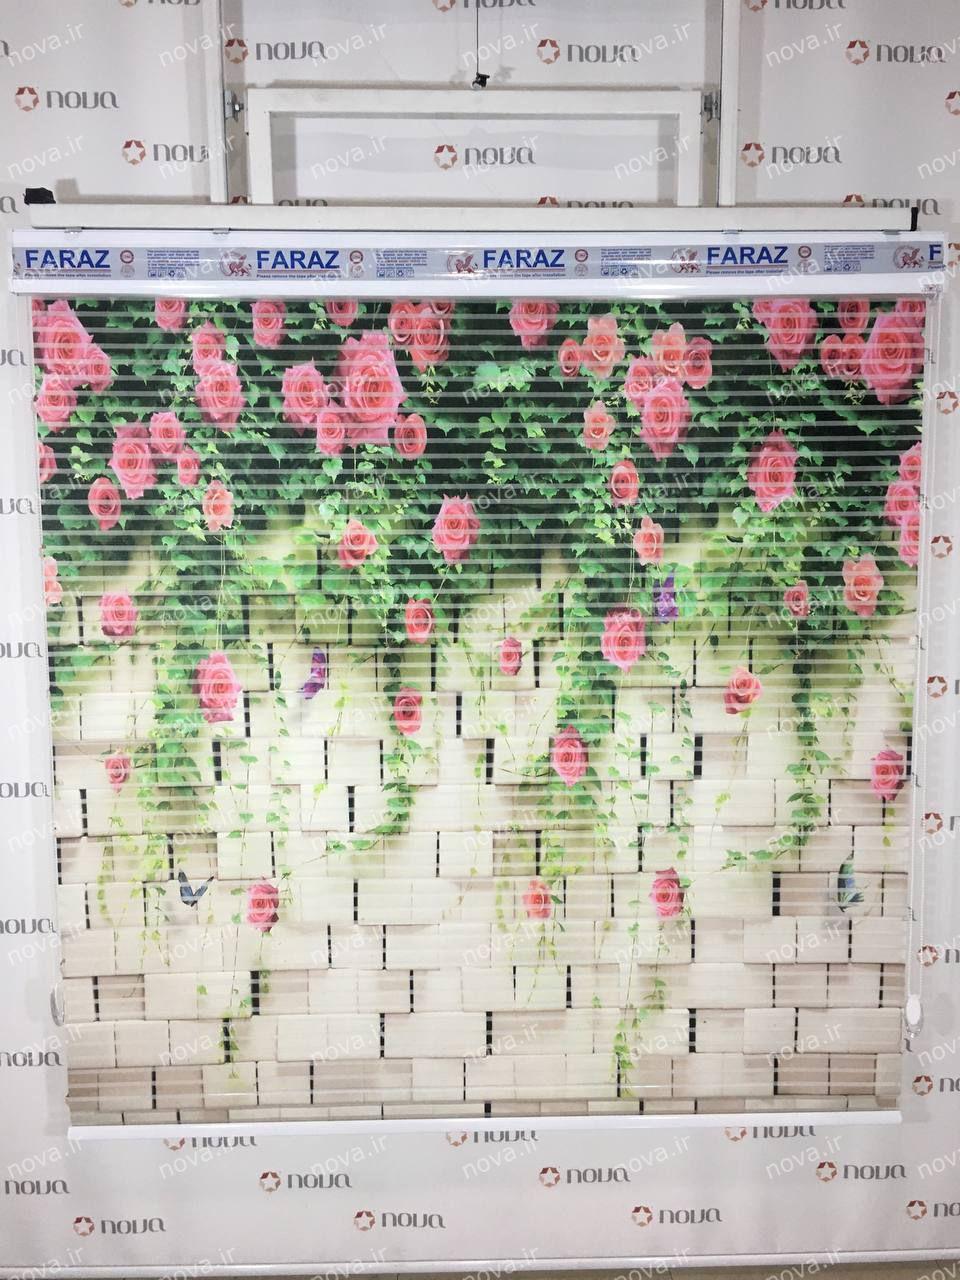 عکس نمونه کارگاهی | پرده شب و روز طرح 3D دیوار و گل های رز کد FLW-26